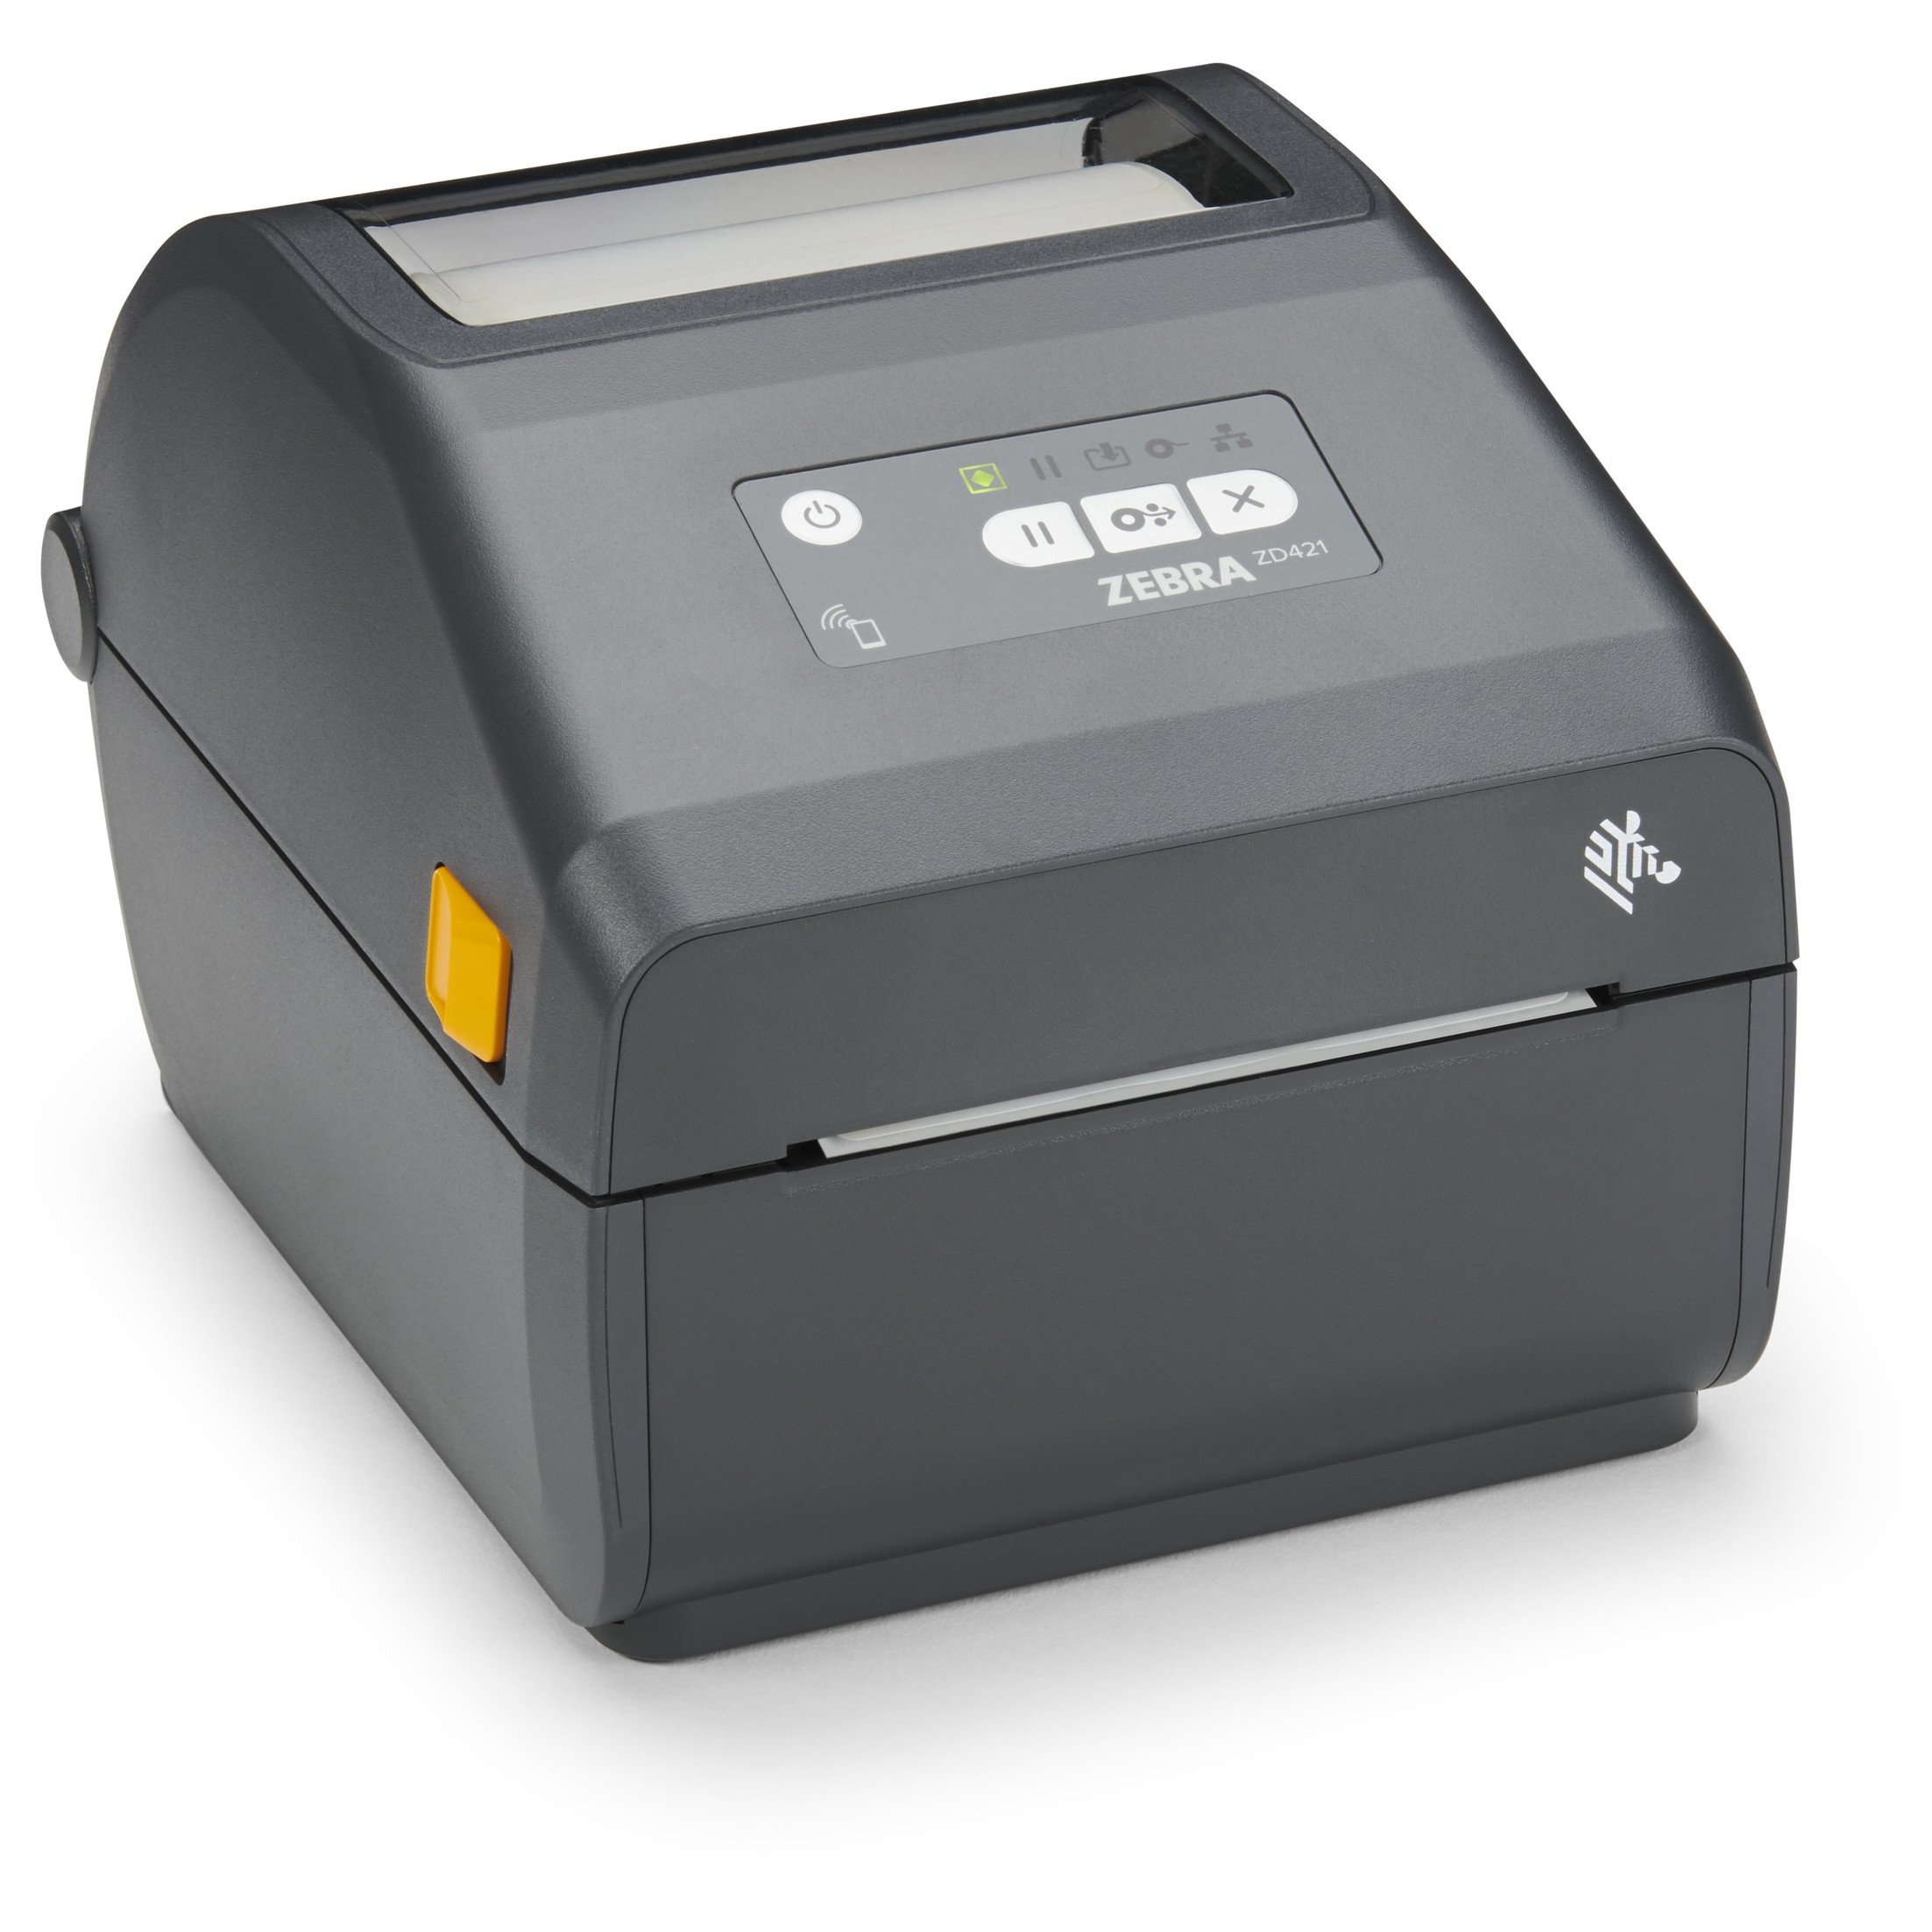 Zebra ZD421 label printer